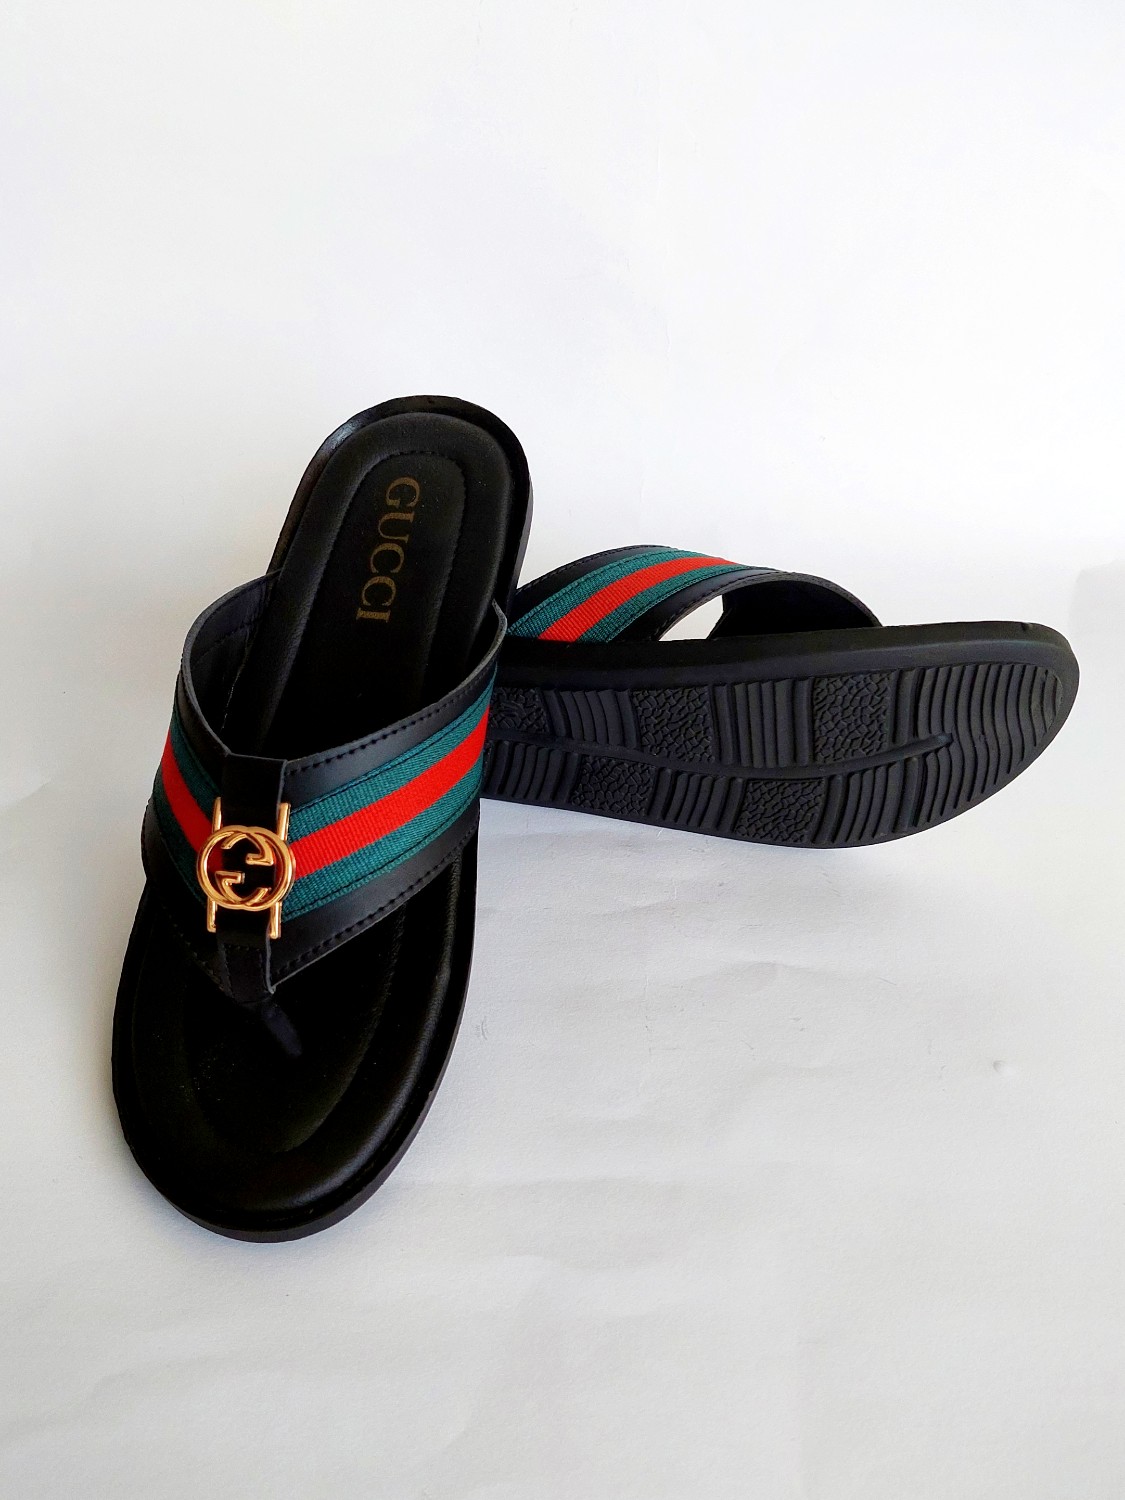 FGUC01-Branded Luxury Black Slippers For Men - Frenzy